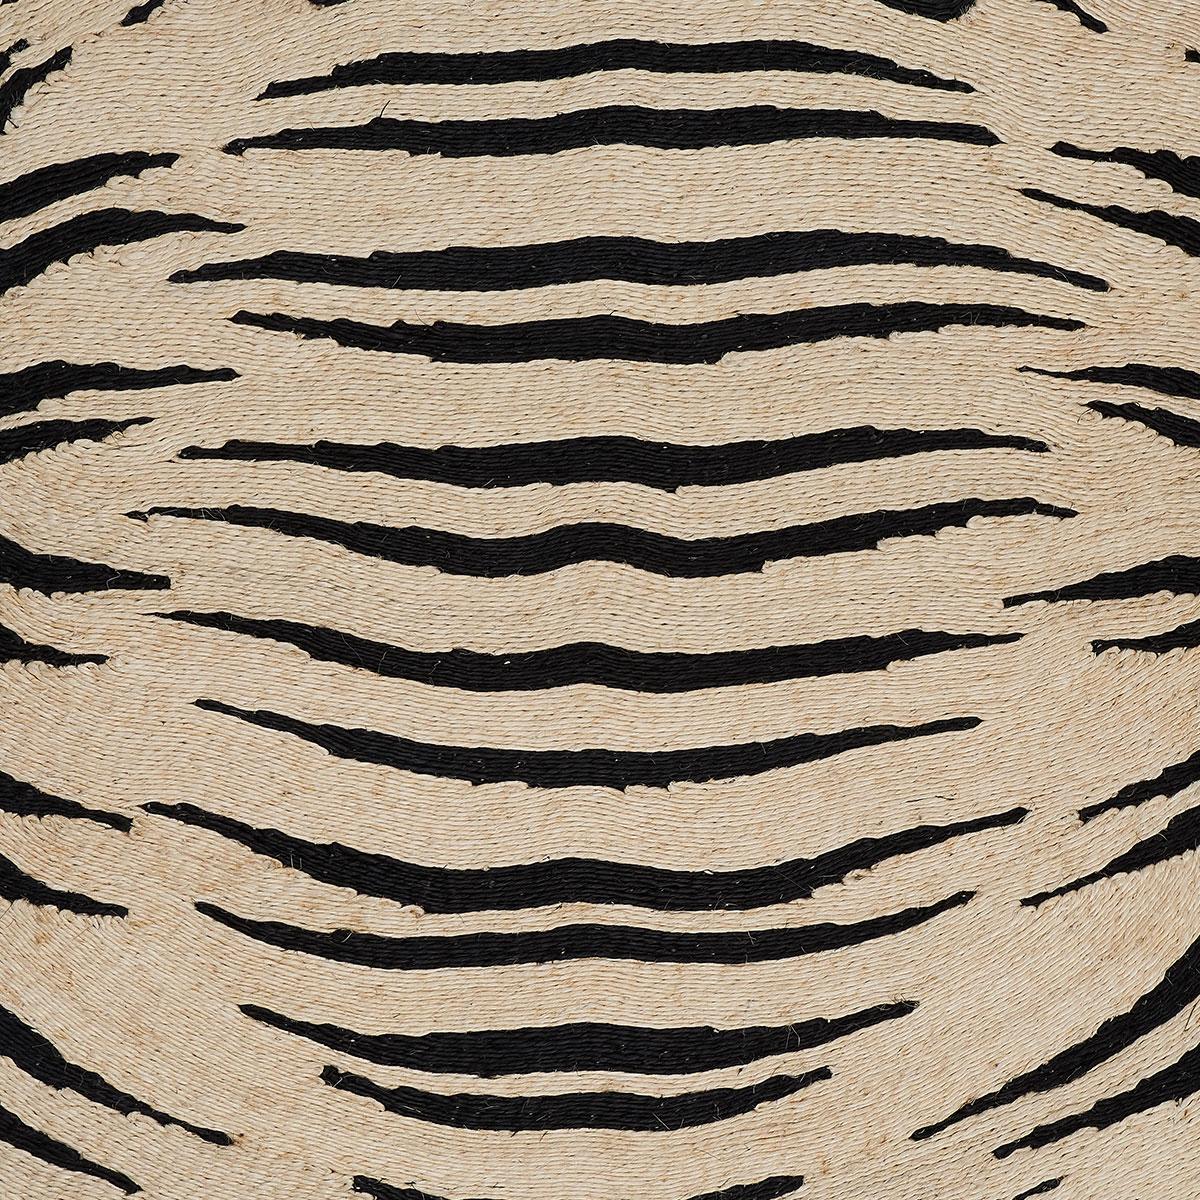 Der von Adam Charlap Hyman entworfene Teppich Tigre, der von den Kuriositätenkabinetten des 17. Jahrhunderts inspiriert wurde, ist eine phantasievolle, einzigartig moderne Interpretation eines Tiger-Trophäenteppichs. Mit seinen schwarzen und